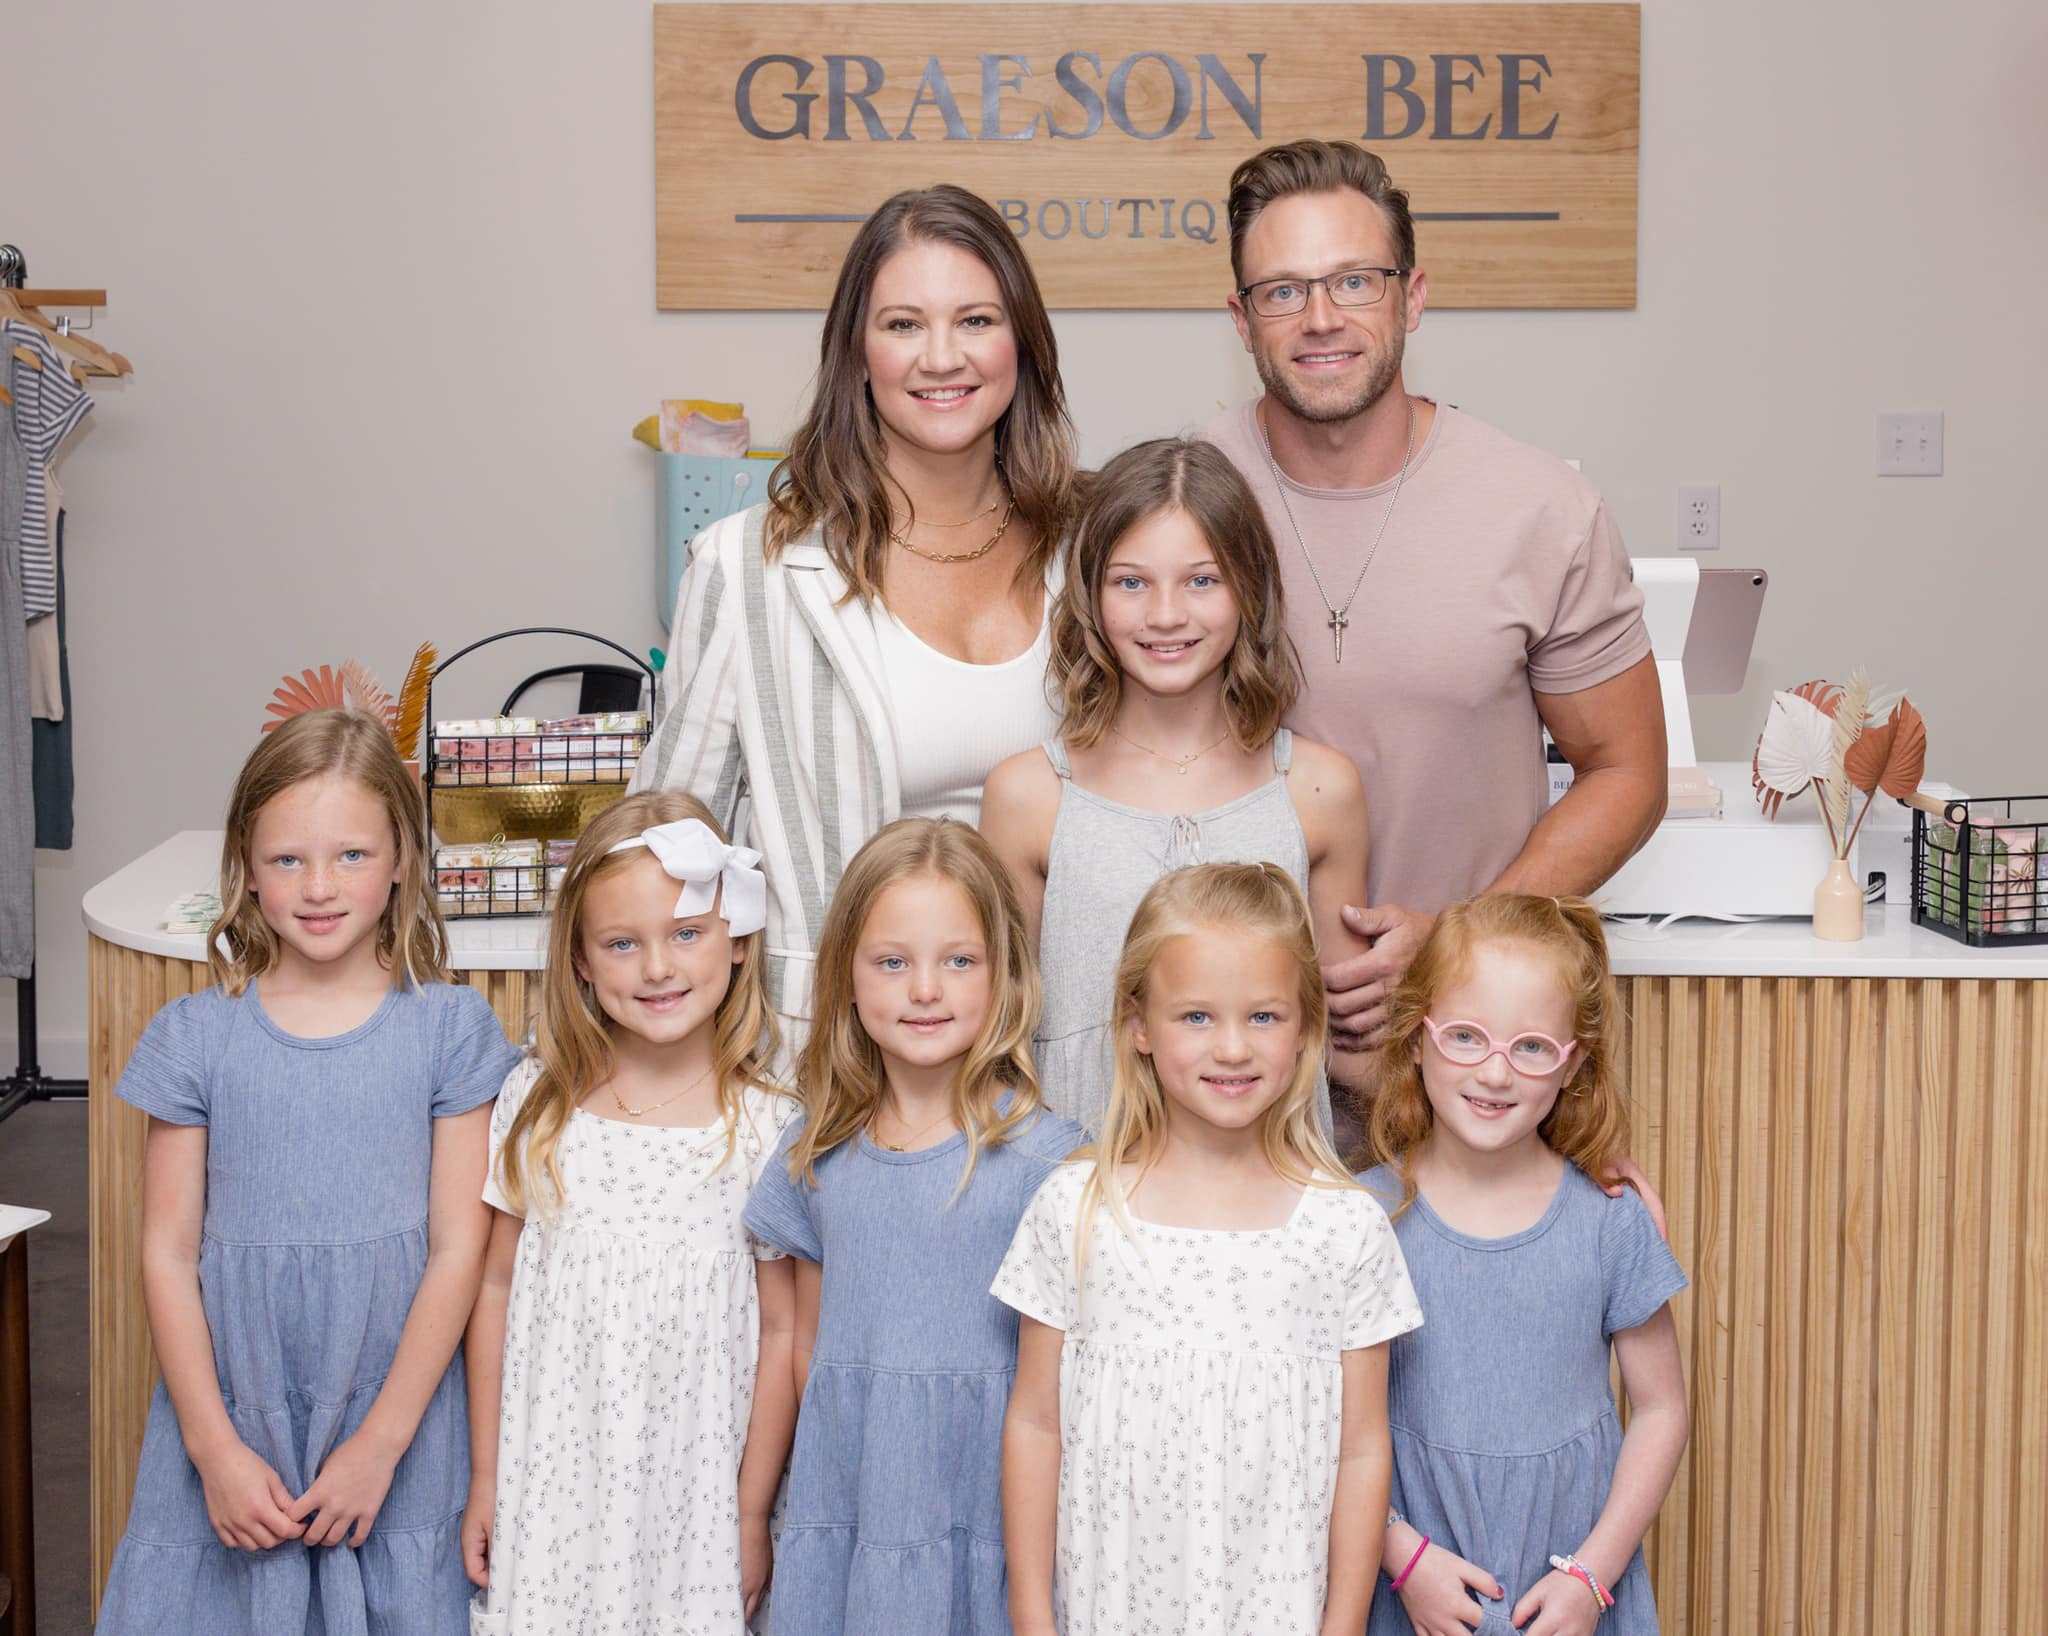 Graeson Bee Boutique